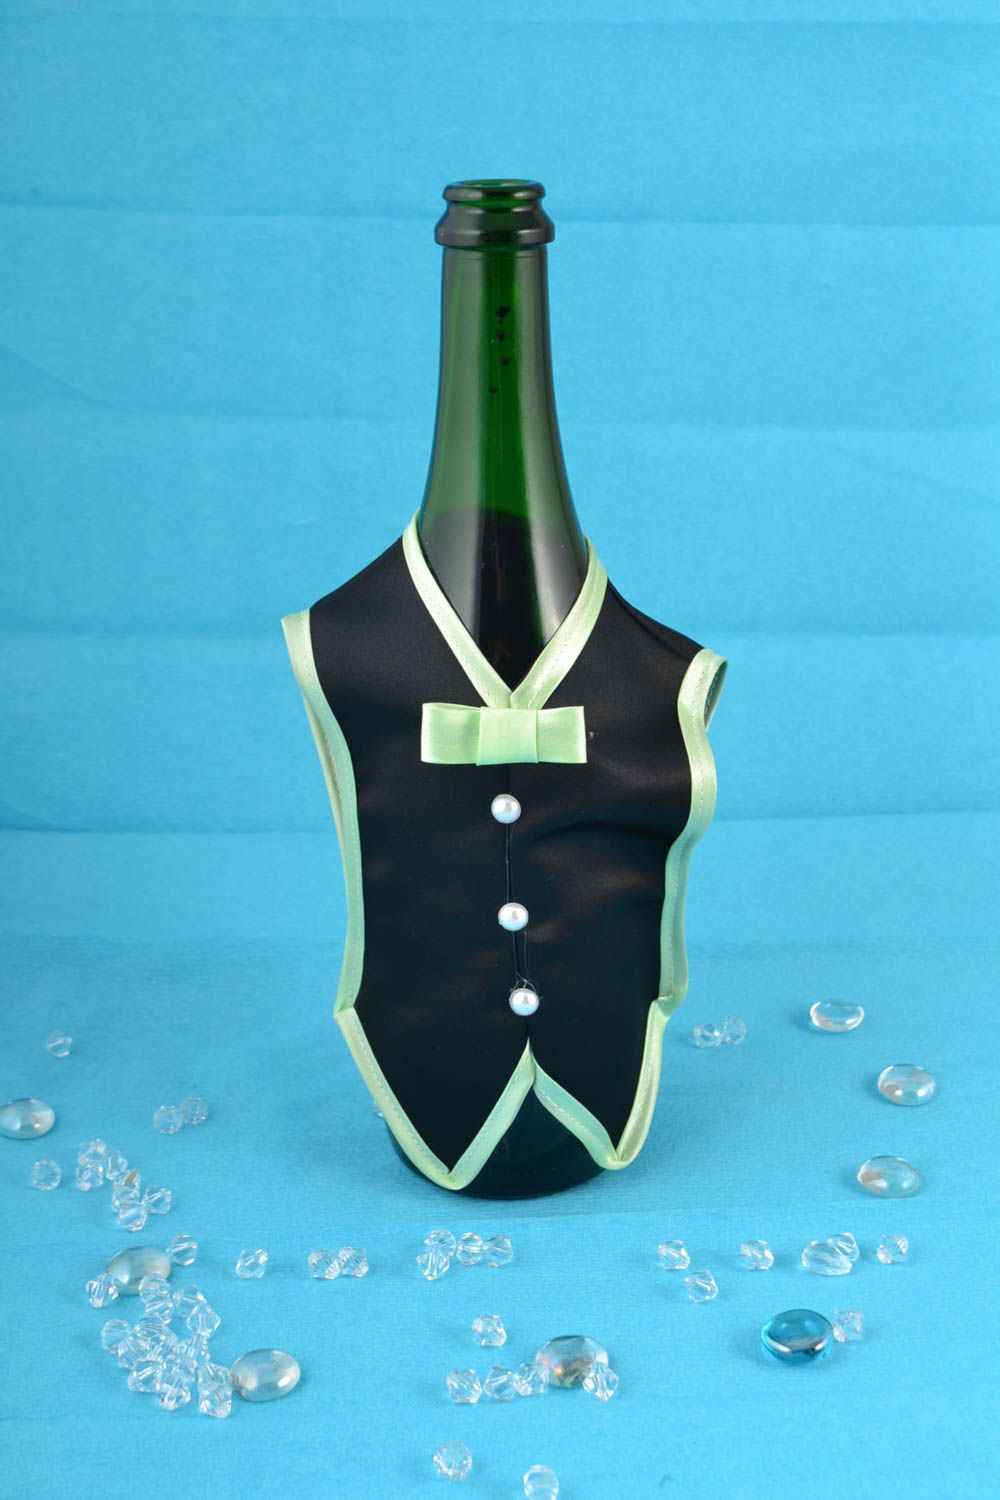 Одежда жениха или фрак на бутылку шампанского ручной работы из атласной ткани фото 1